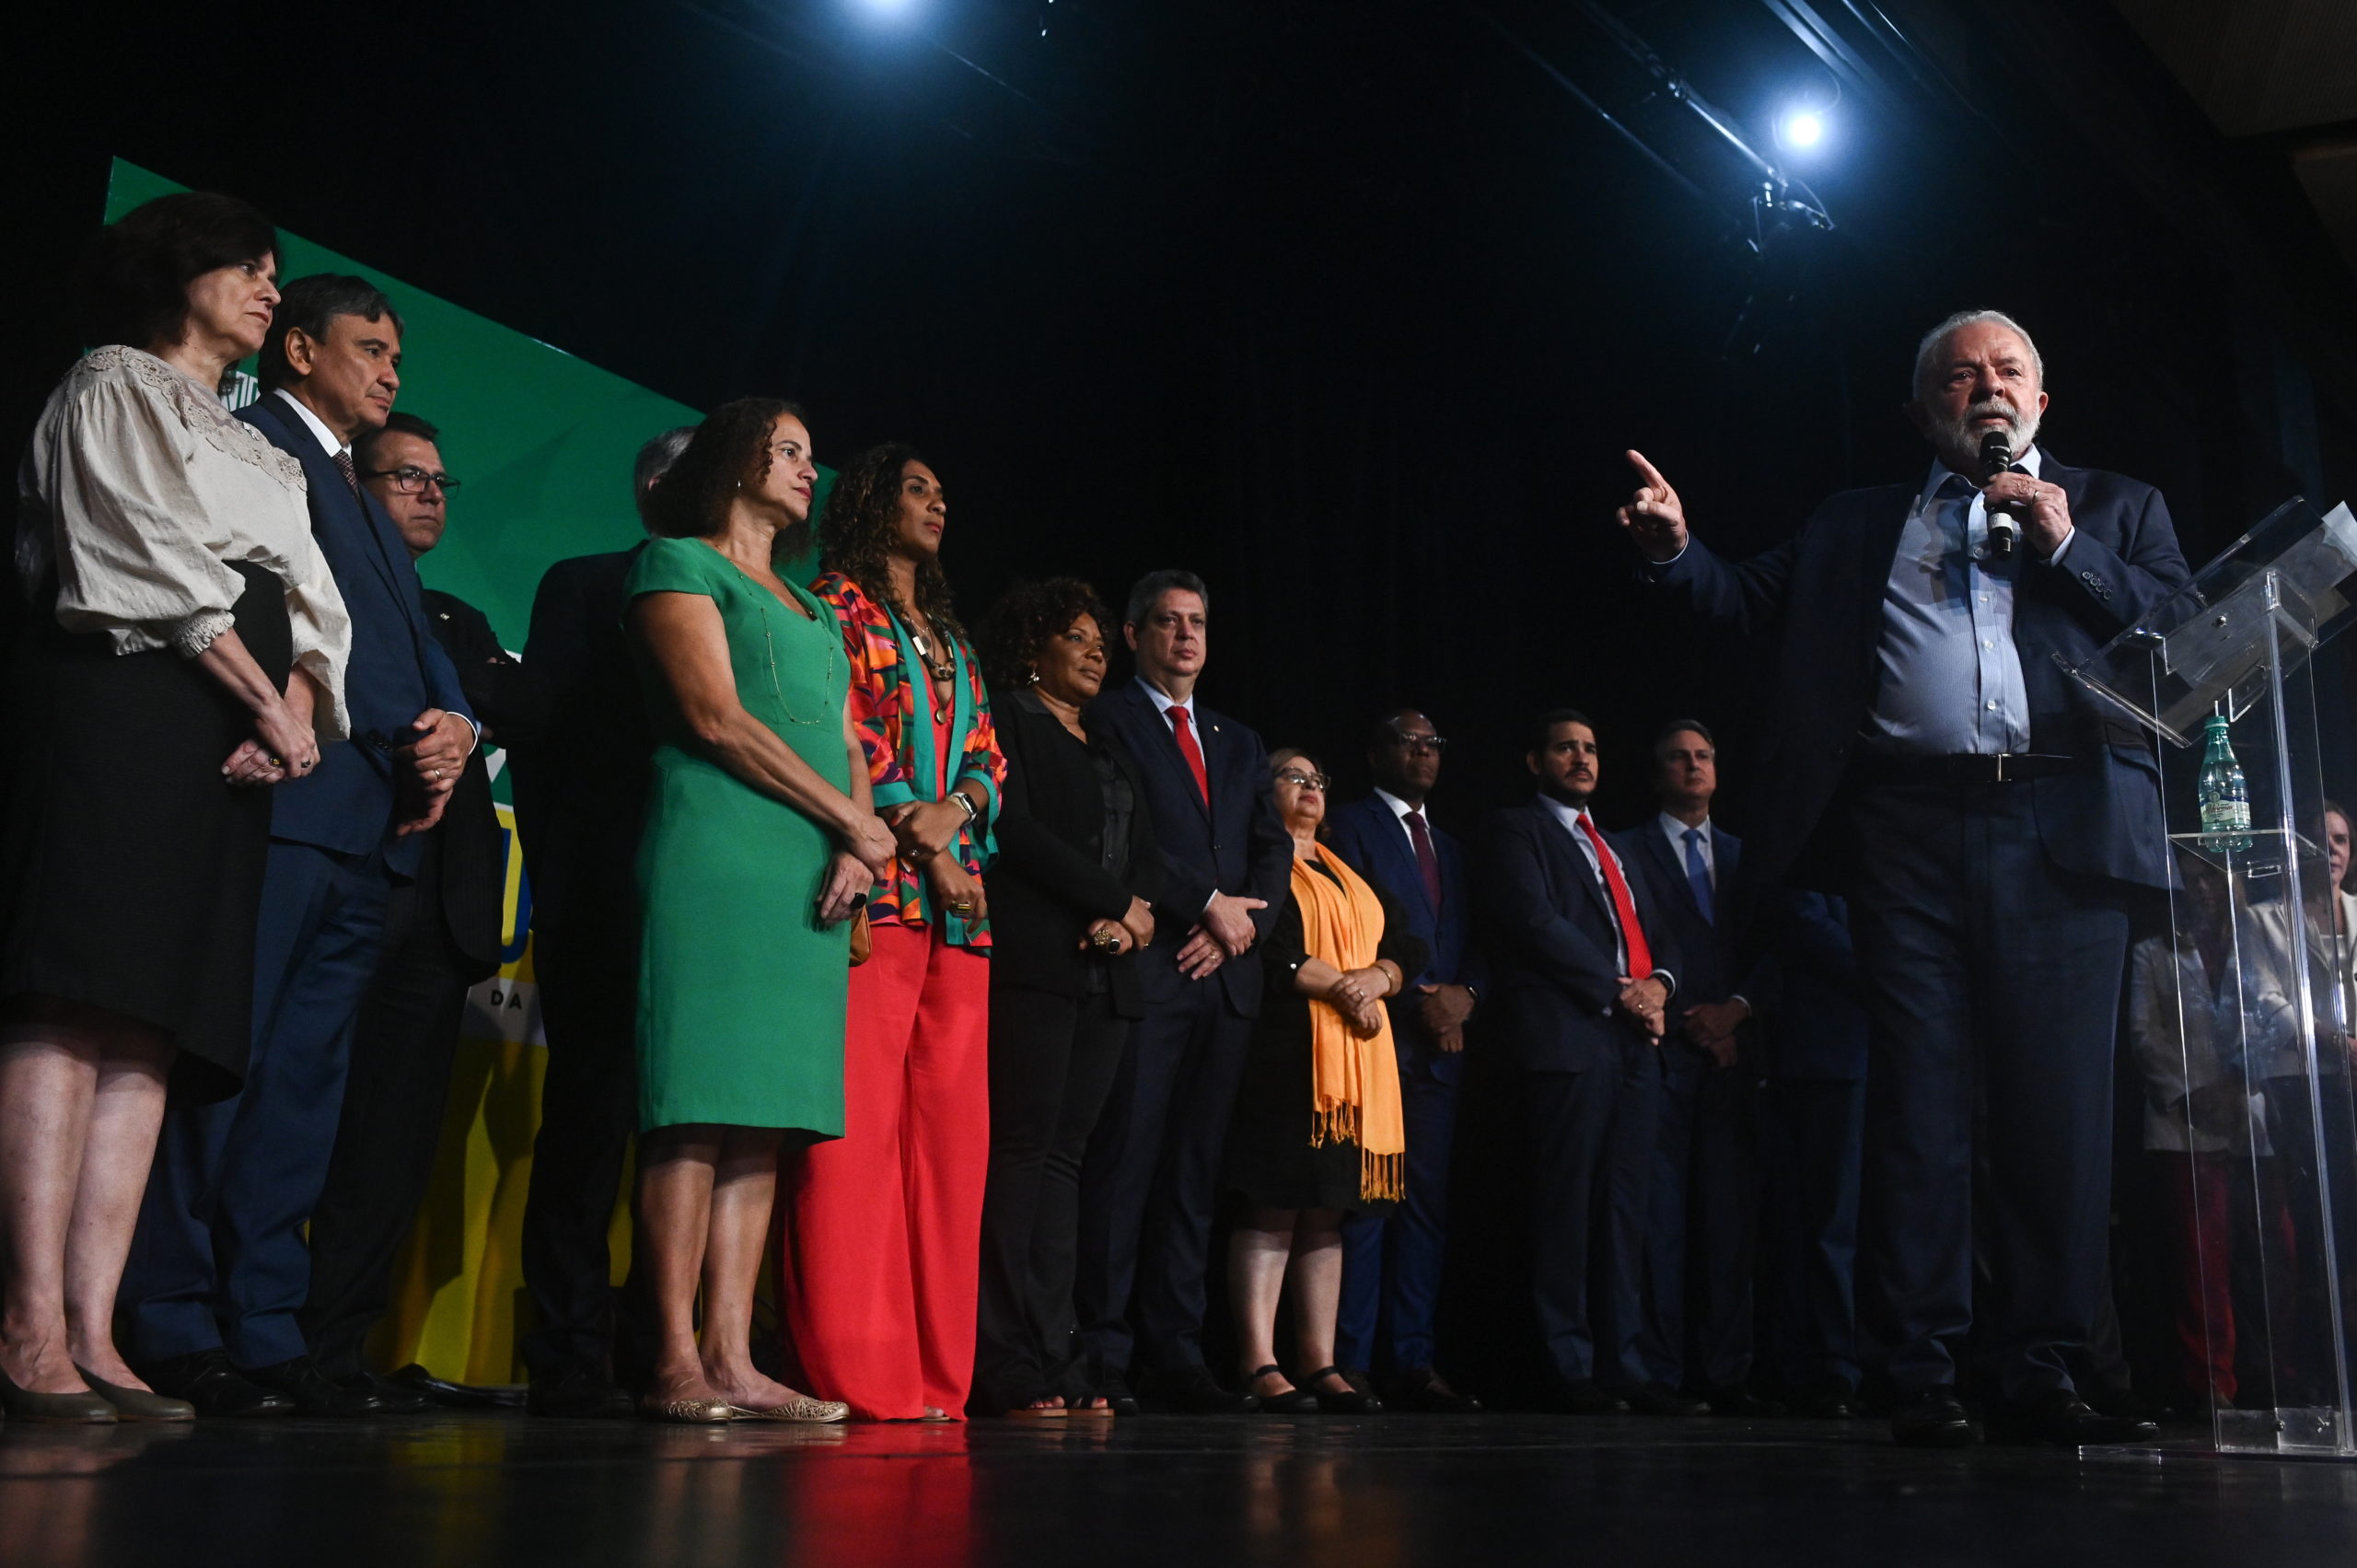 Βραζιλία: Ο πρόεδρος Λούλα παρουσίασε 16 από τους 37 υπουργούς της κυβέρνησής του